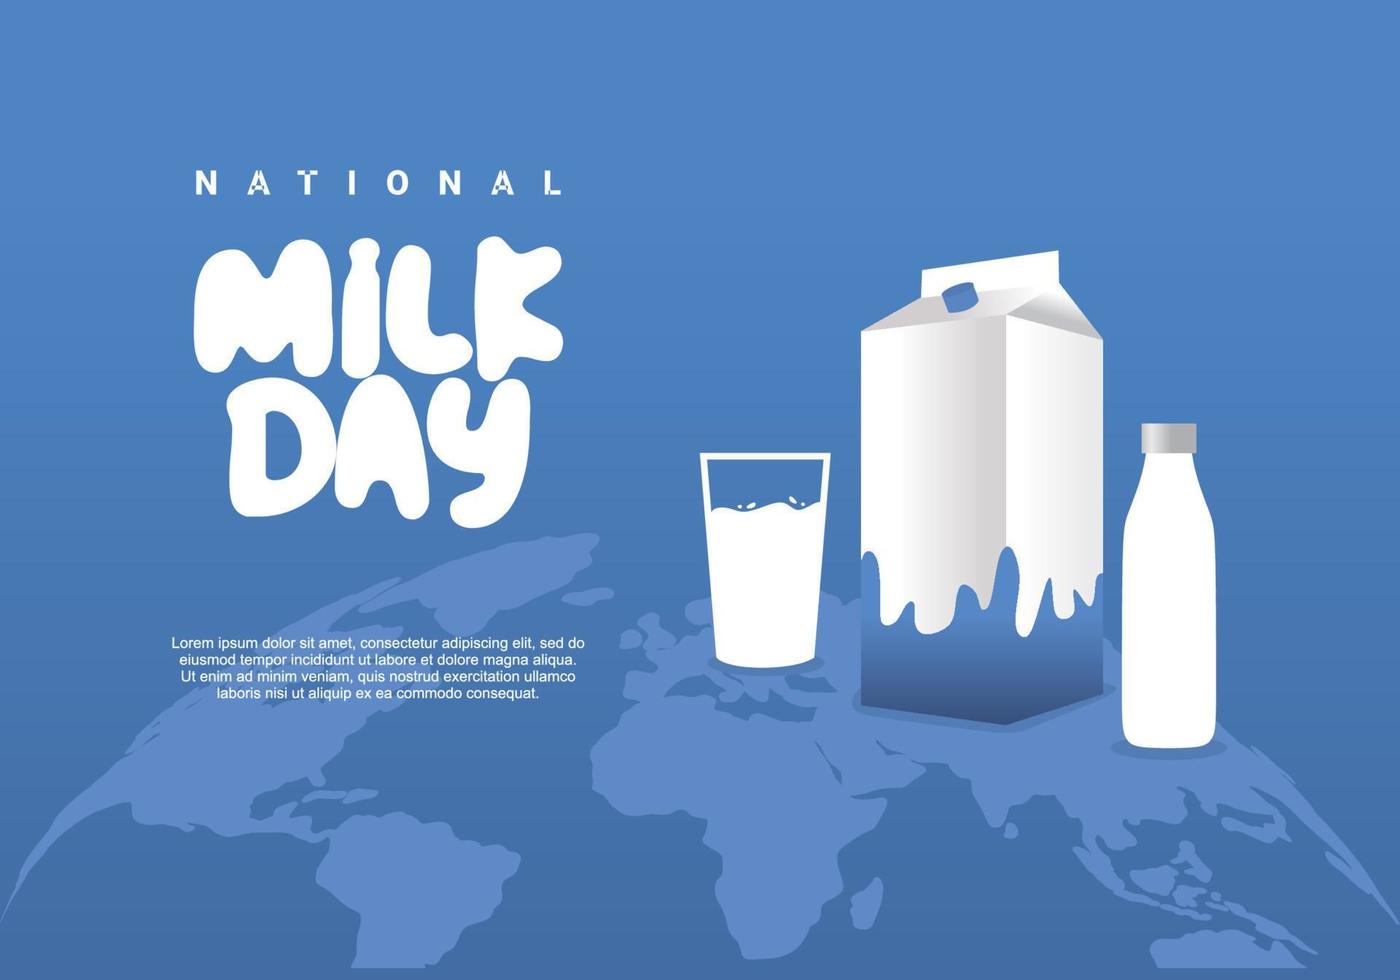 cartaz do dia nacional do leite isolado em fundo azul comemorado em 11 de janeiro. vetor